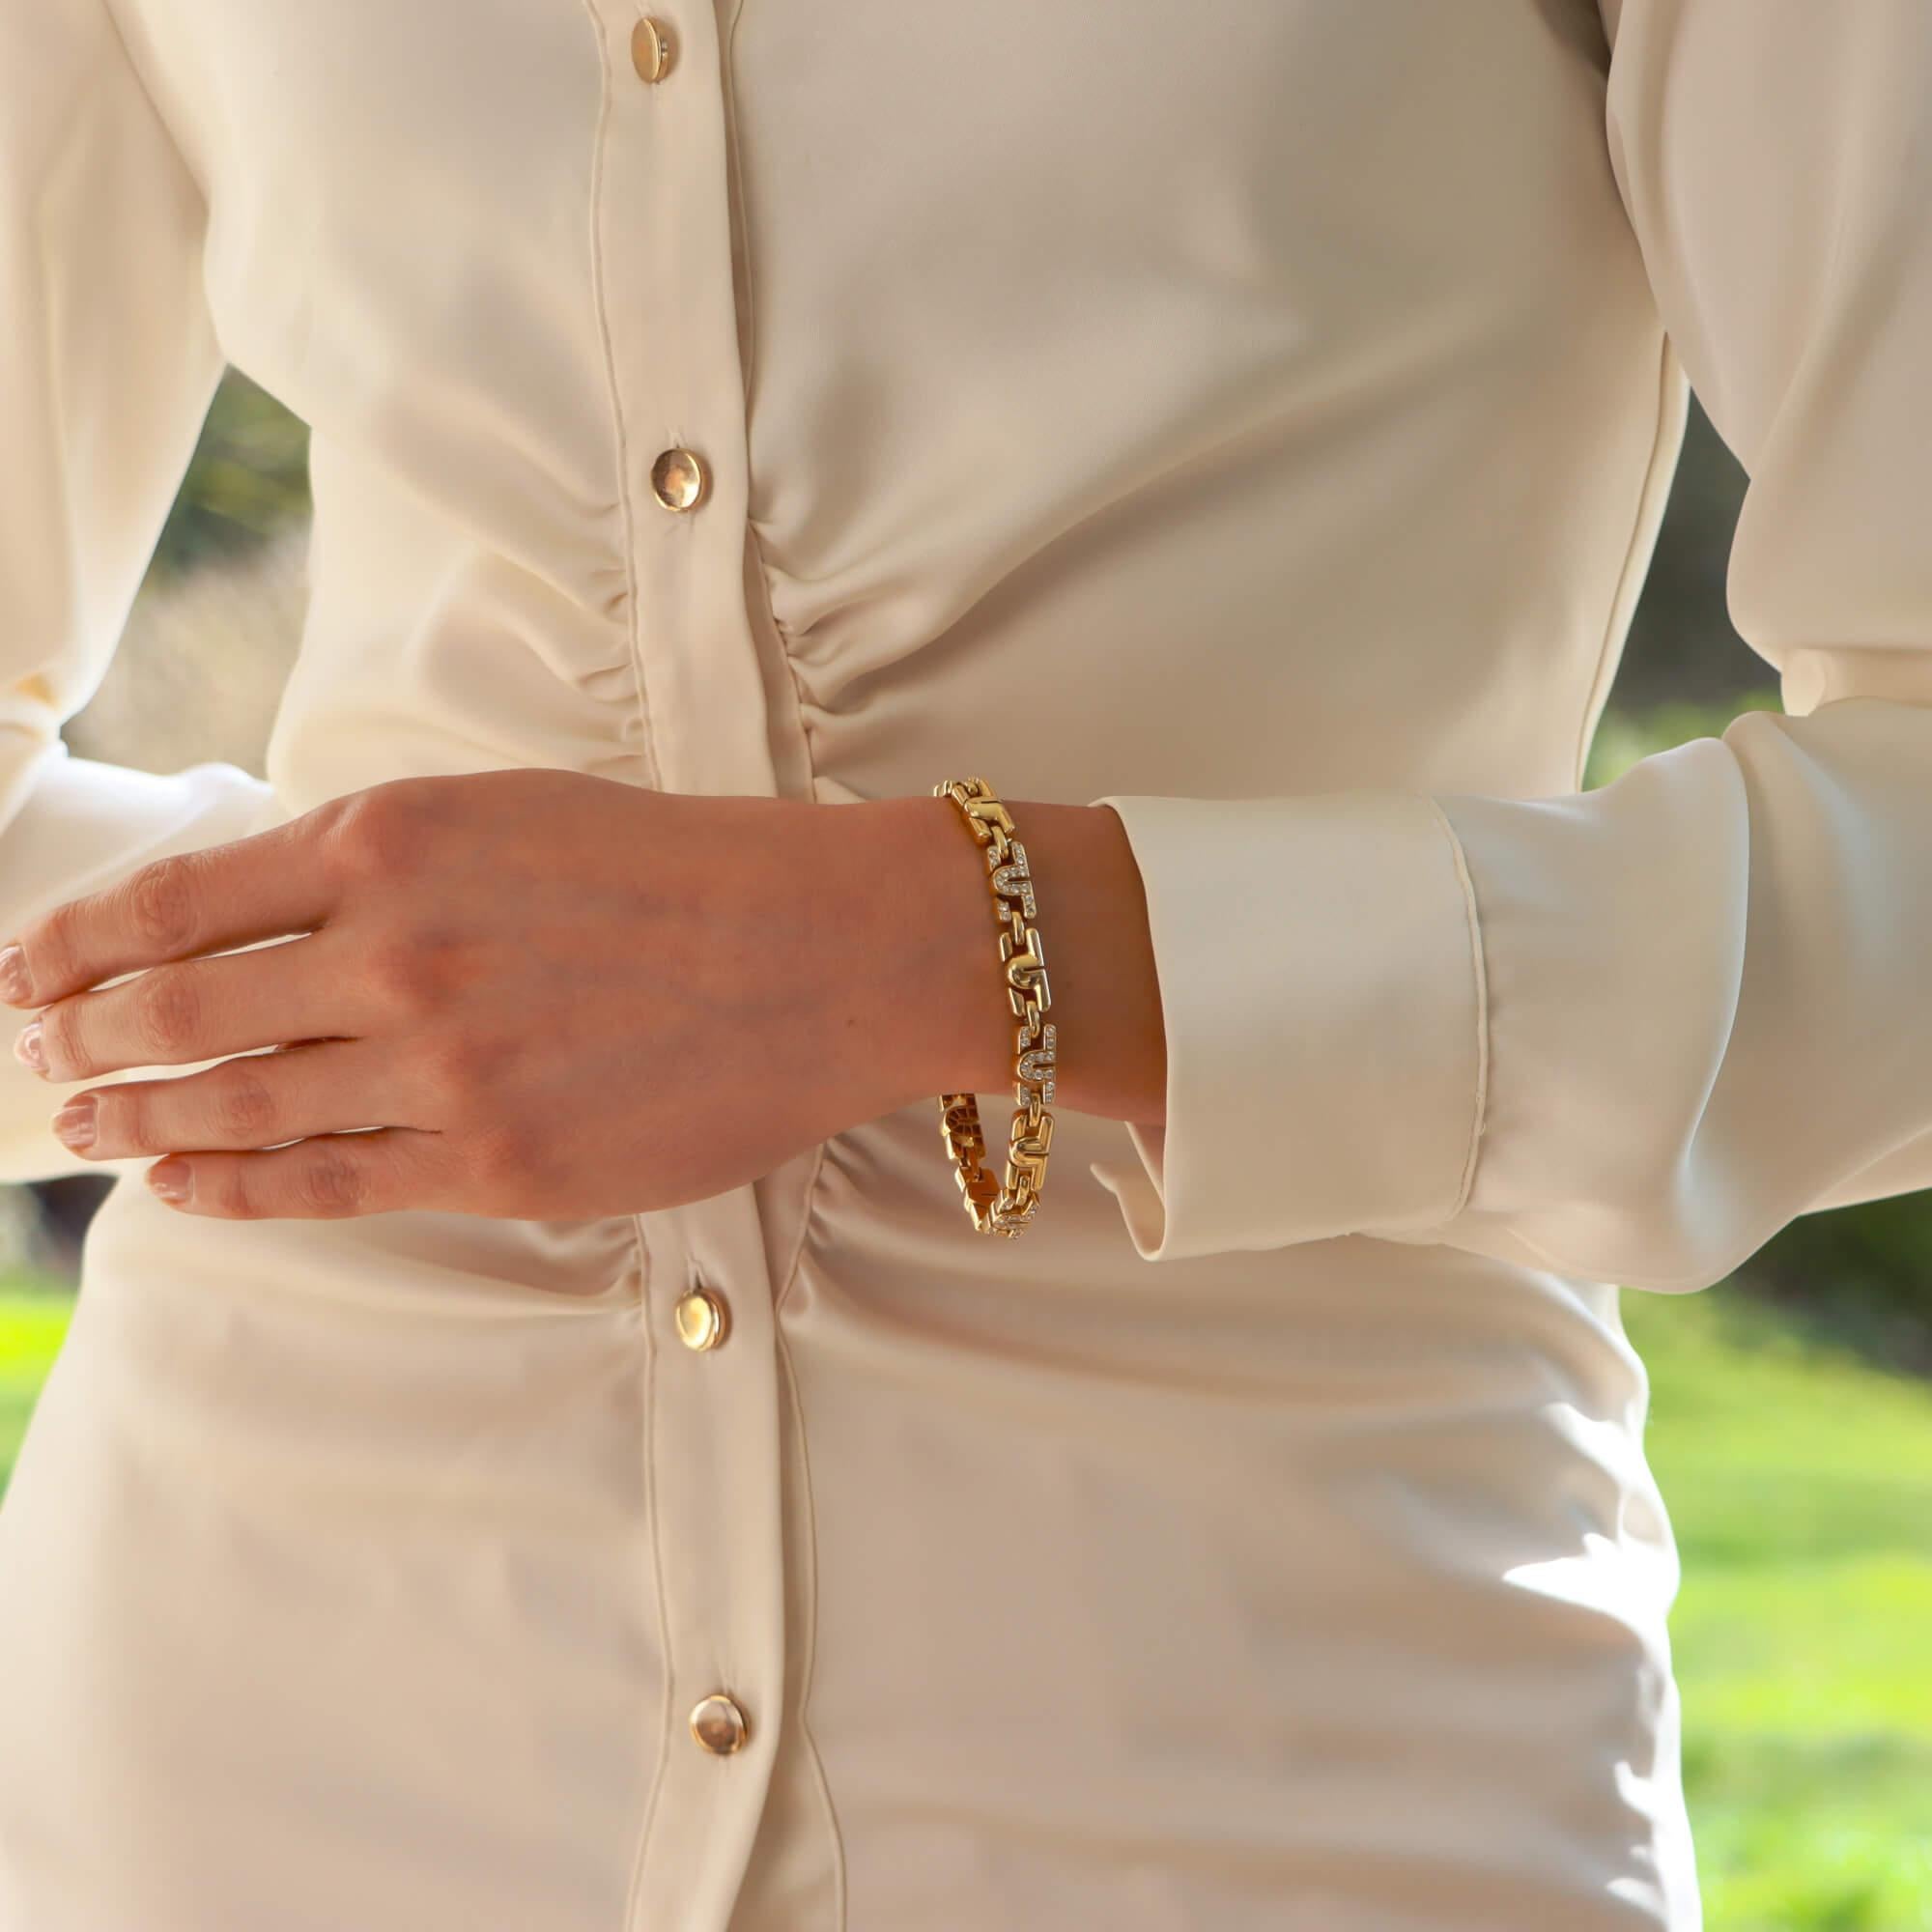 Eine schöne Vintage Bvlgari Parentesi Diamant-Gliederarmband in 18k Gelbgold gesetzt.

Das Armband stammt aus einem inzwischen eingestellten Design der Bvlgari Parentesi-Kollektion und besteht aus 11 ikonischen Parentesi-Motiven. Die Motive sind